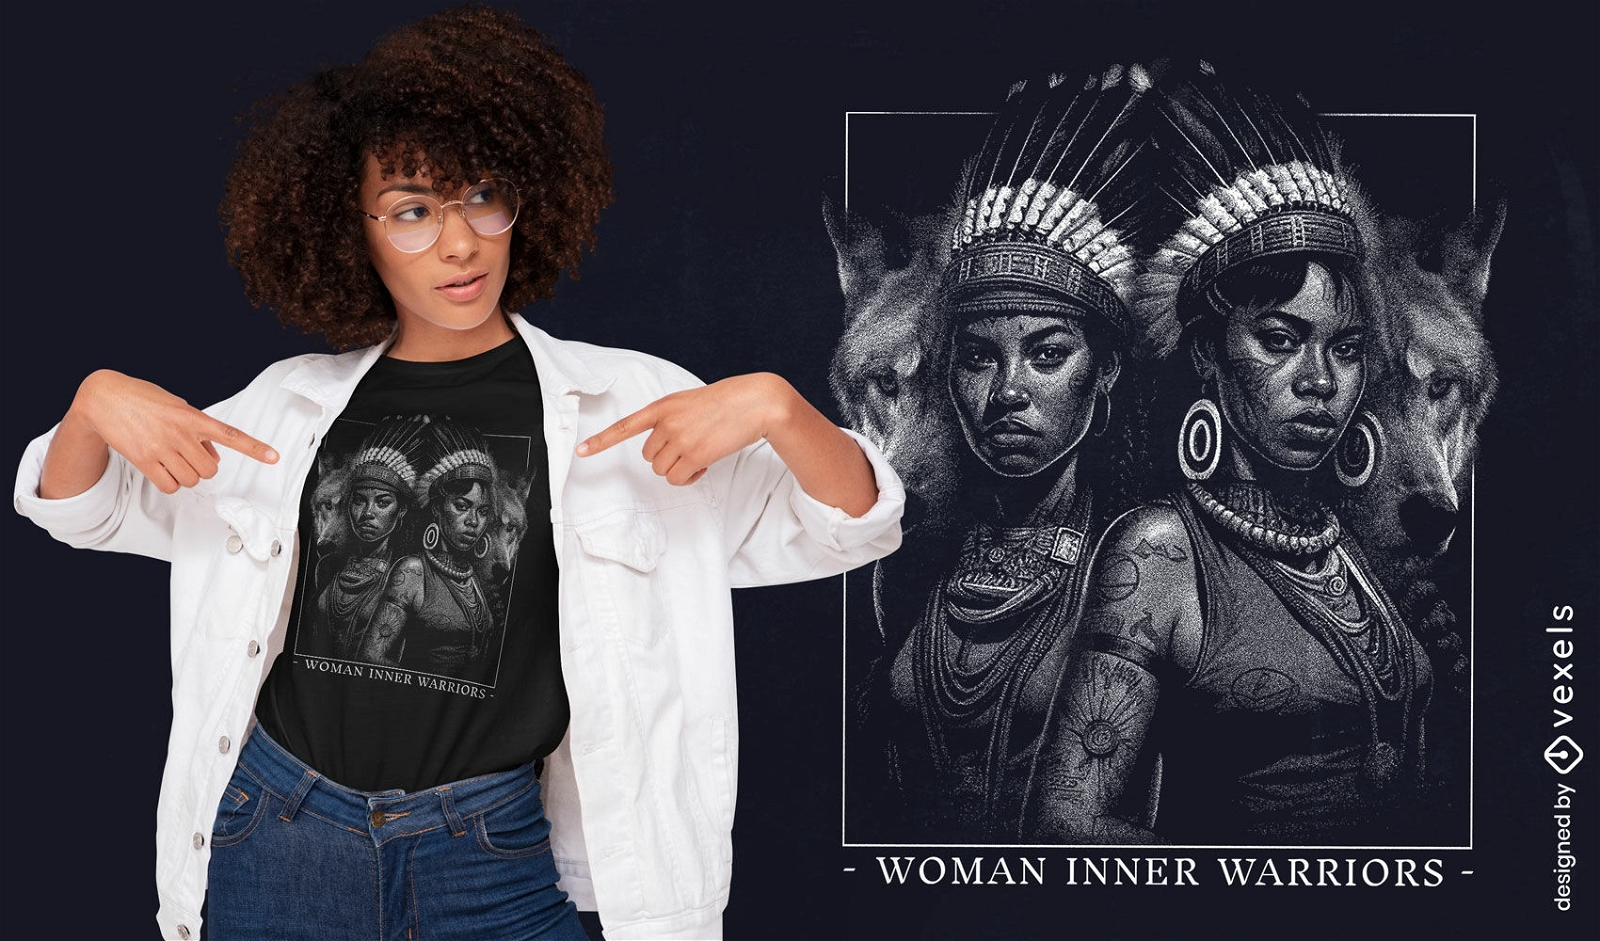 Dise?o de camiseta de mujer guerrera.